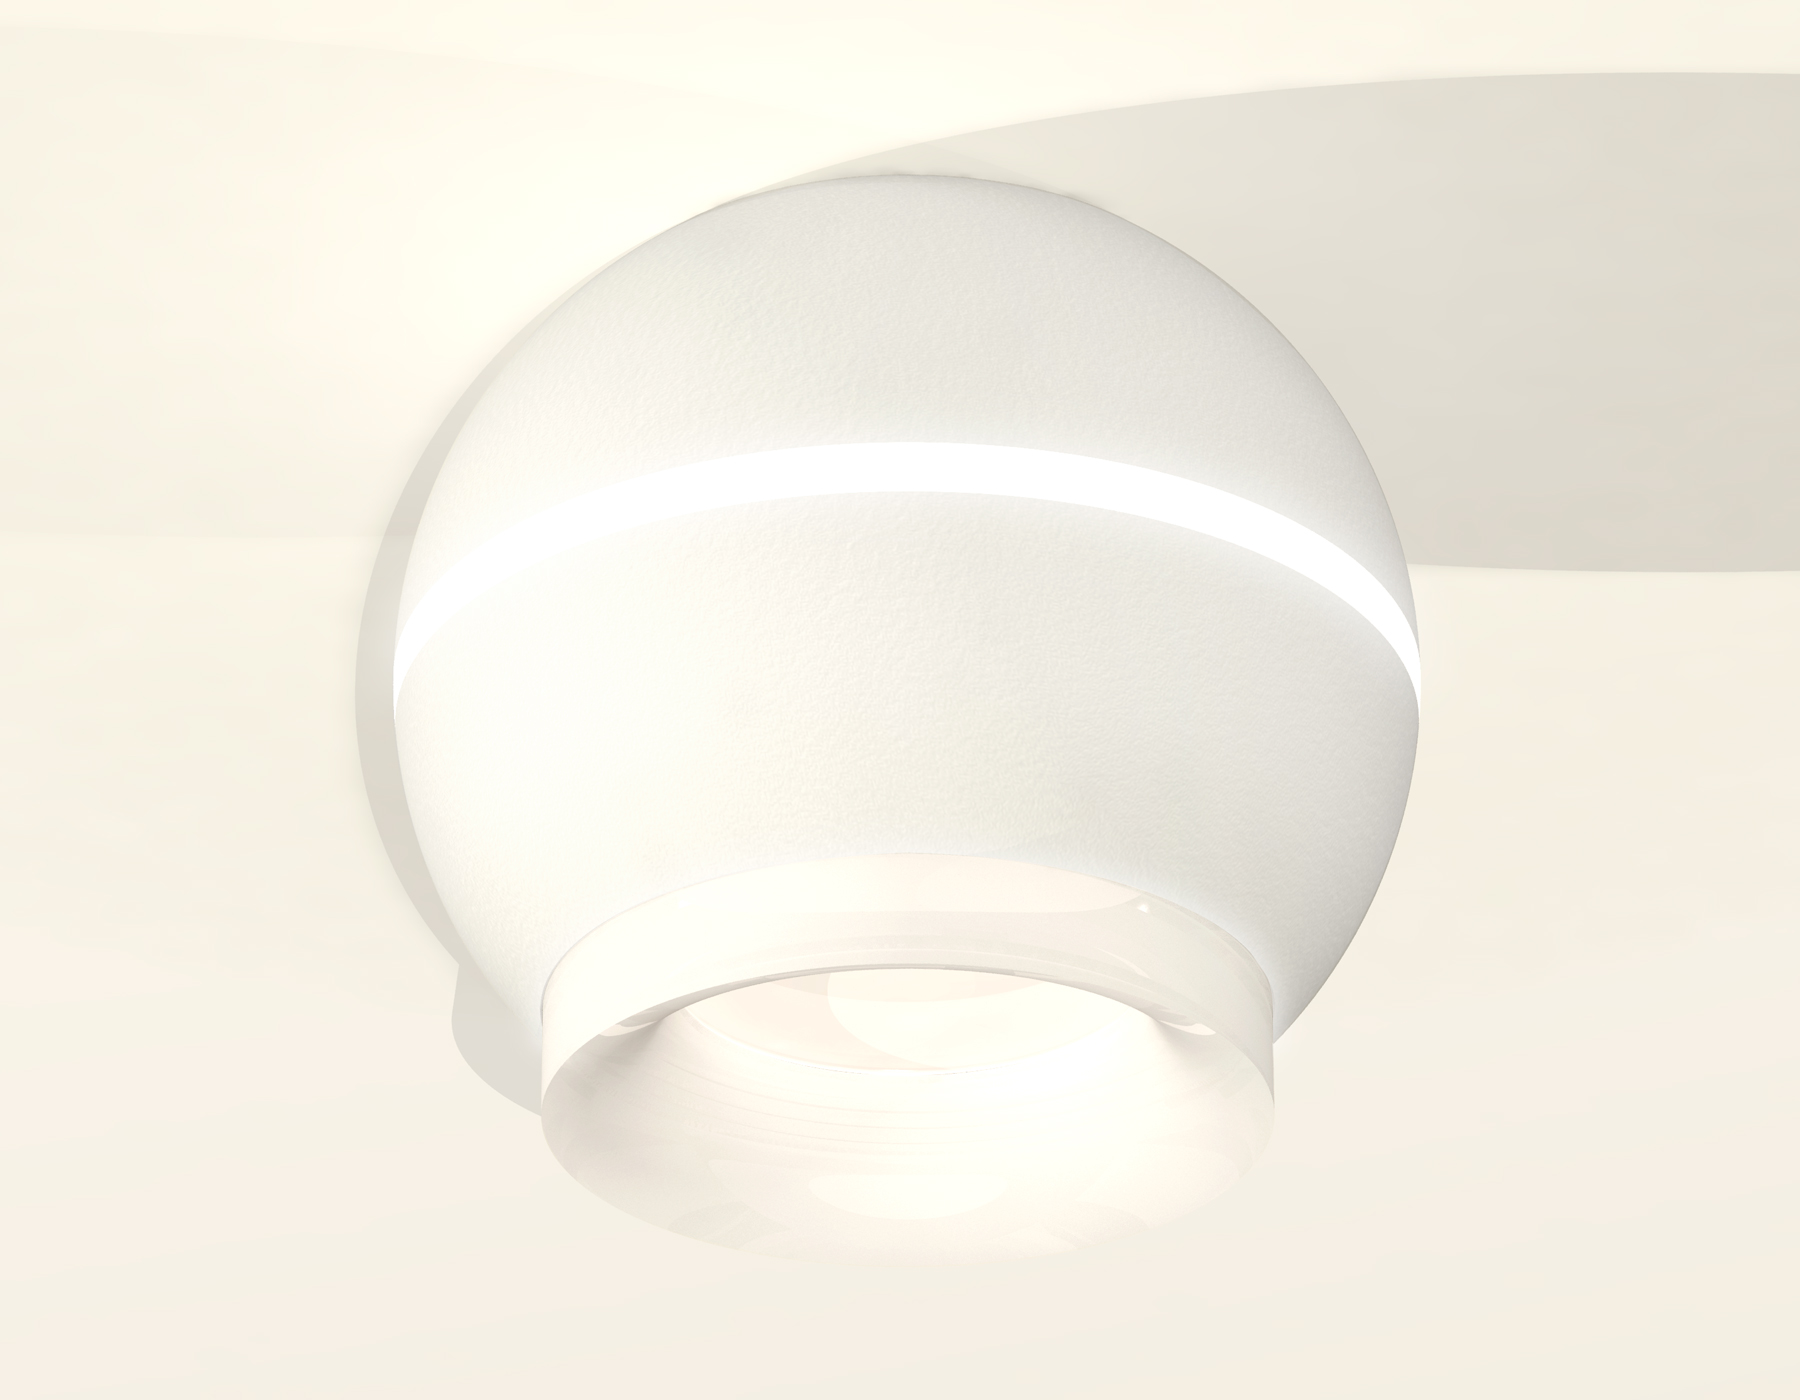 Накладной светильник с дополнительной подсветкой Ambrella Light Techno XS1101041 (C1101, N7165) в #REGION_NAME_DECLINE_PP#